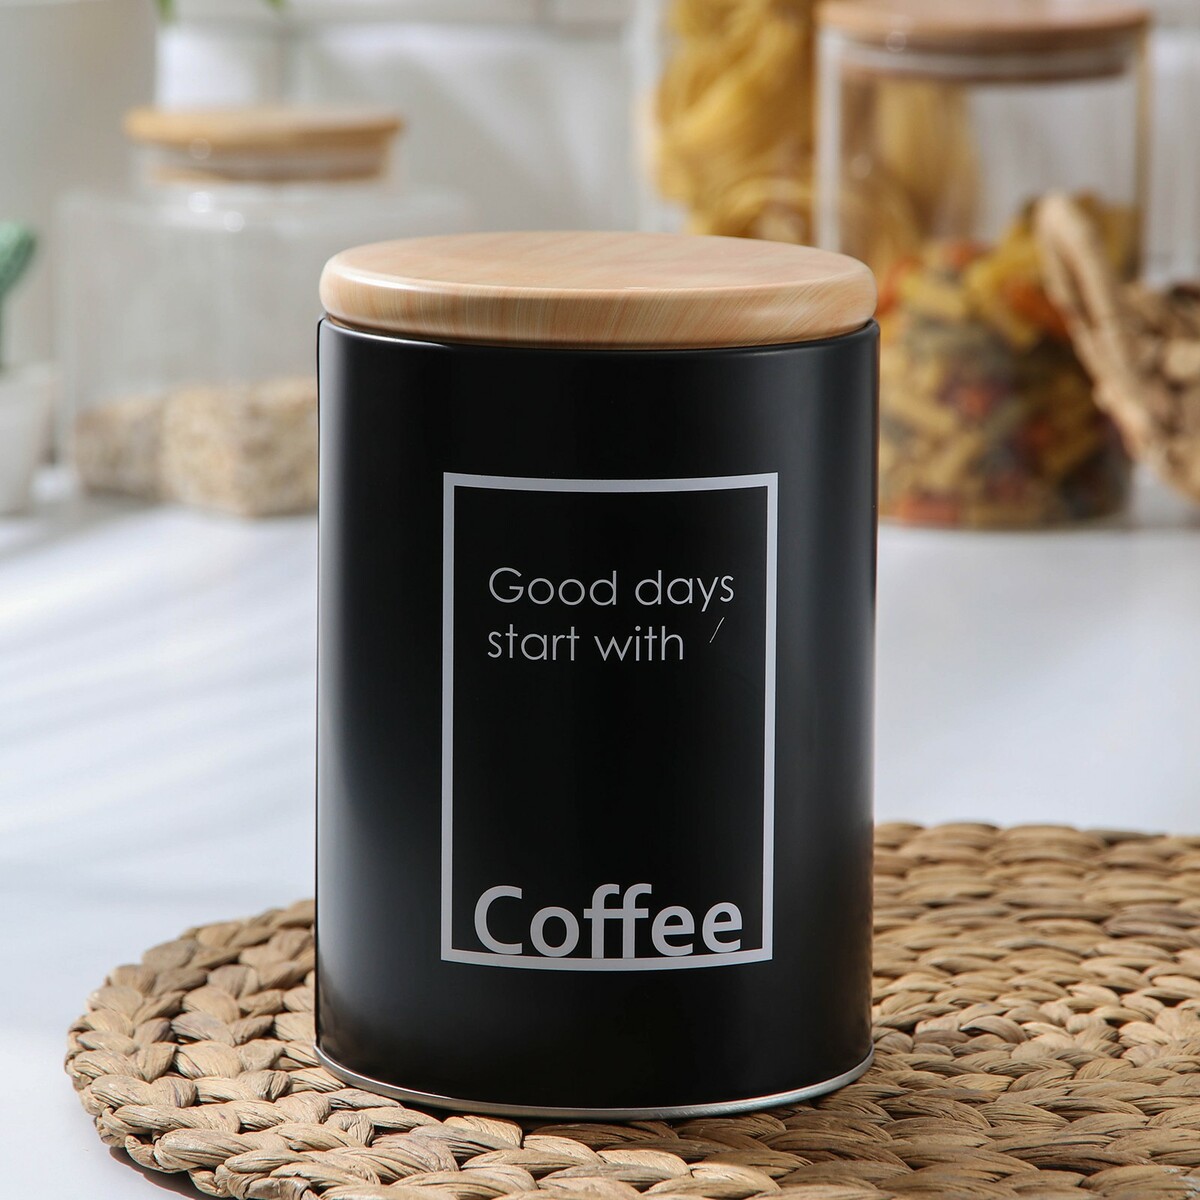 Банка для сыпучих продуктов кофе lifestyle, 11×15,5 см, цвет черный термокружка 350 мл lifestyle